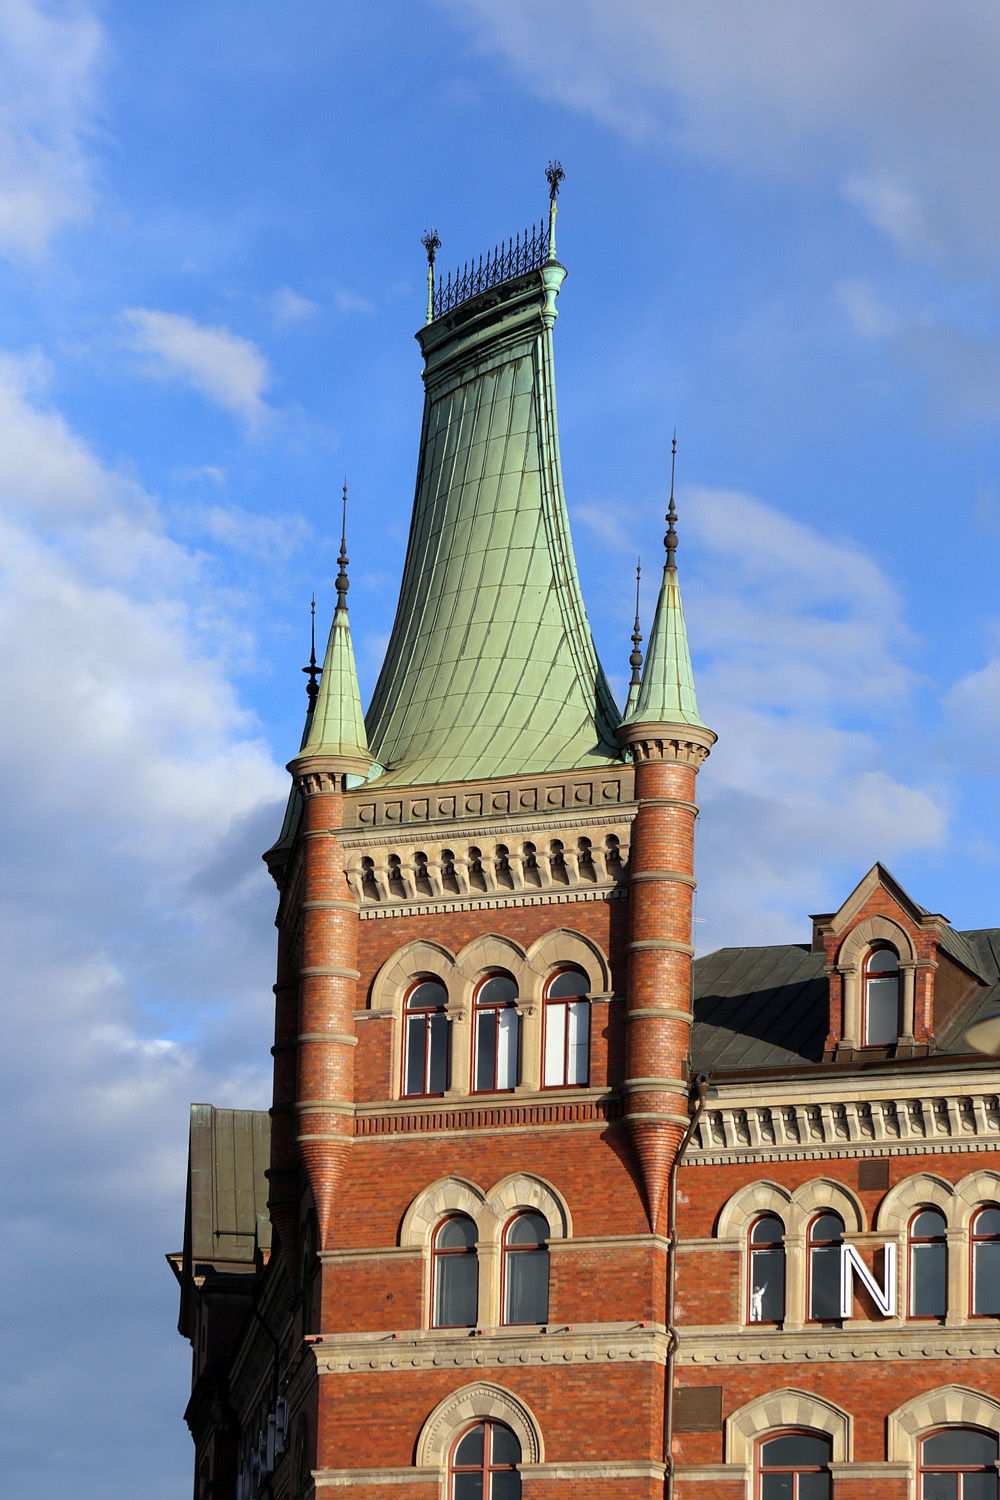 bill-hocker-norstedt-building-stockholm-sweden-2019